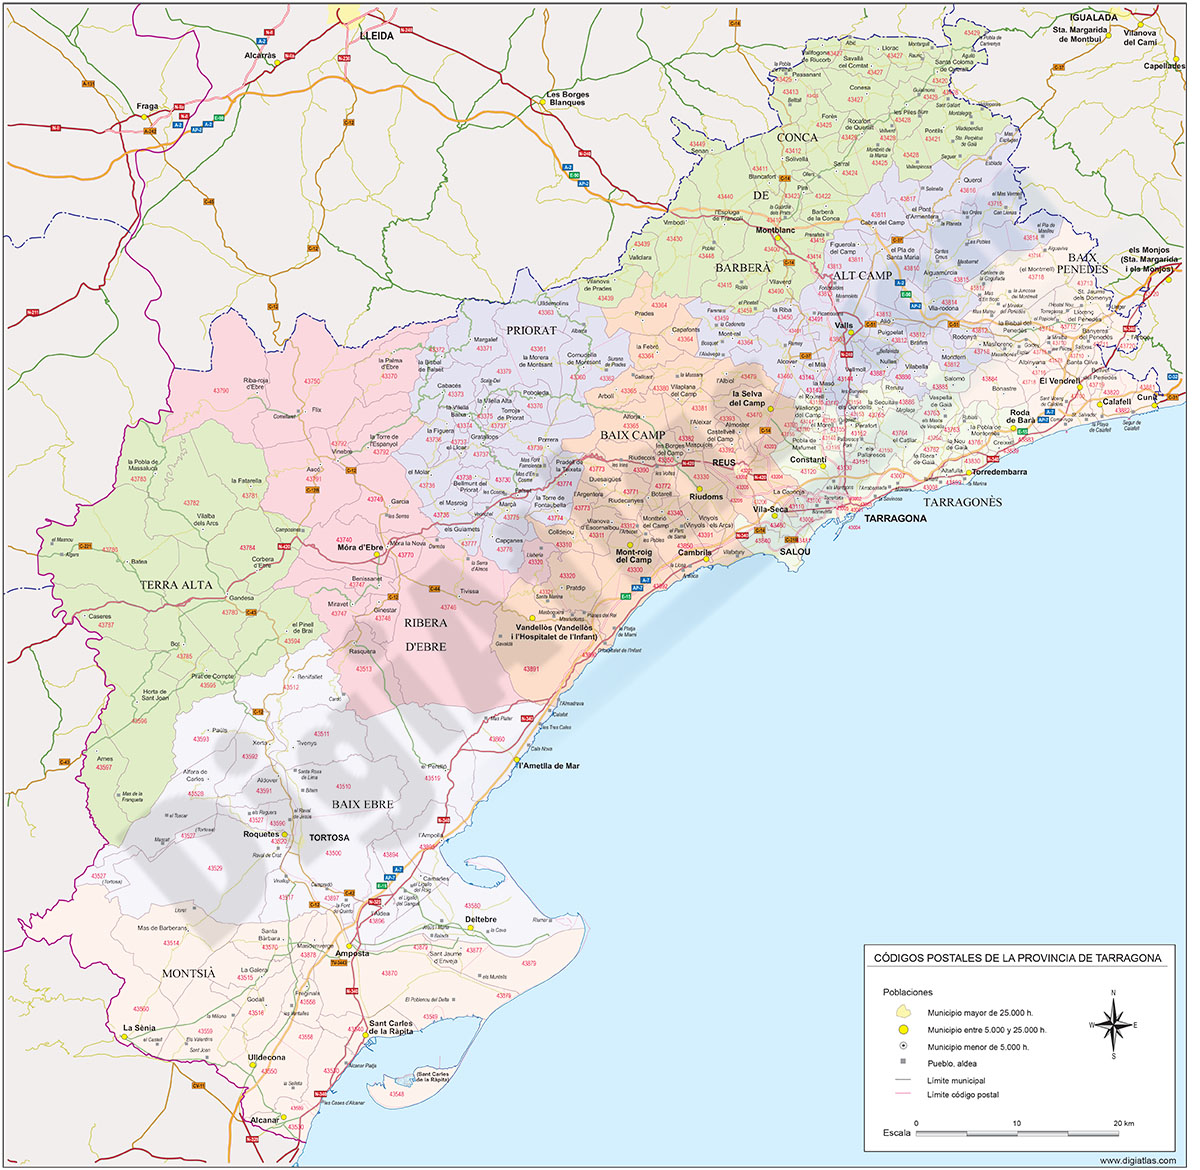 Tarragona - mapa provincial con municipios, comarcas y códigos postales